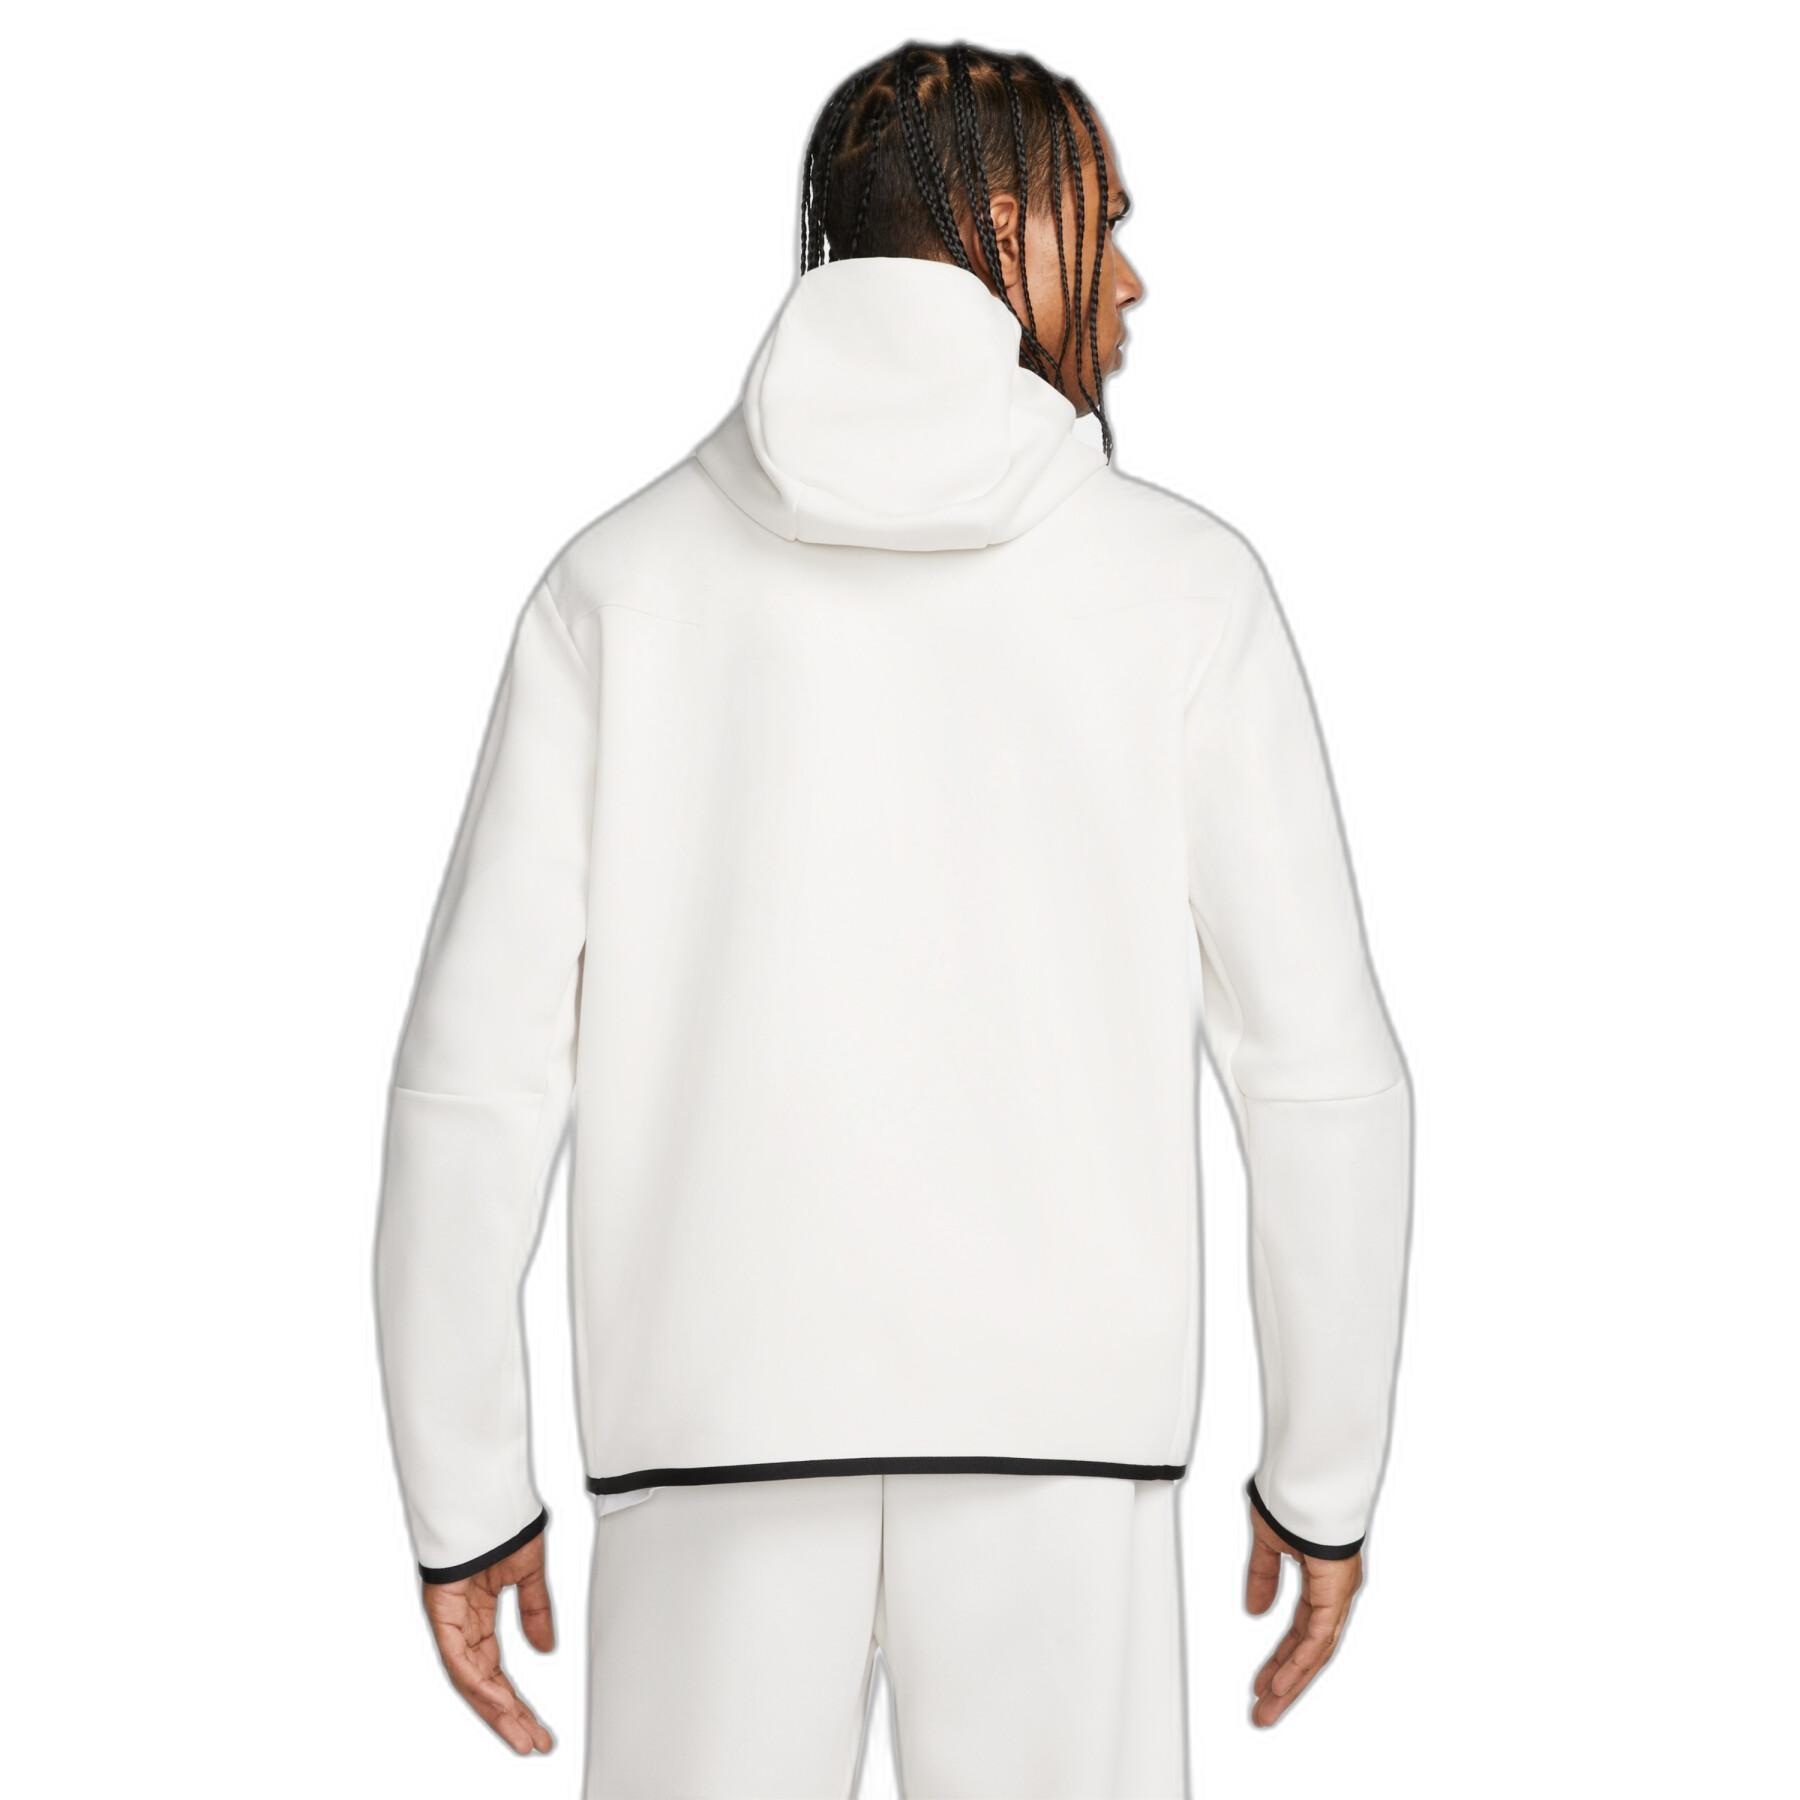 Hooded sweatshirt Nike Sportswear Tech